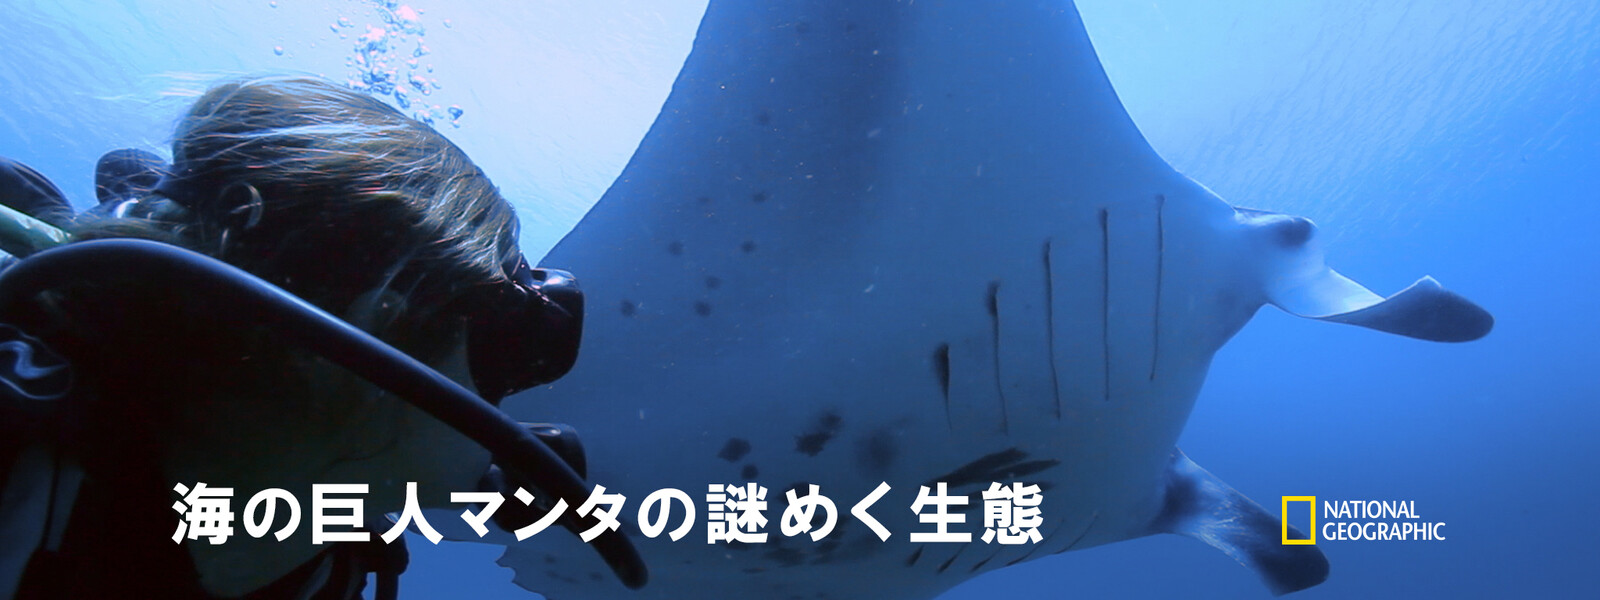 海の巨人マンタの謎めく生態 動画